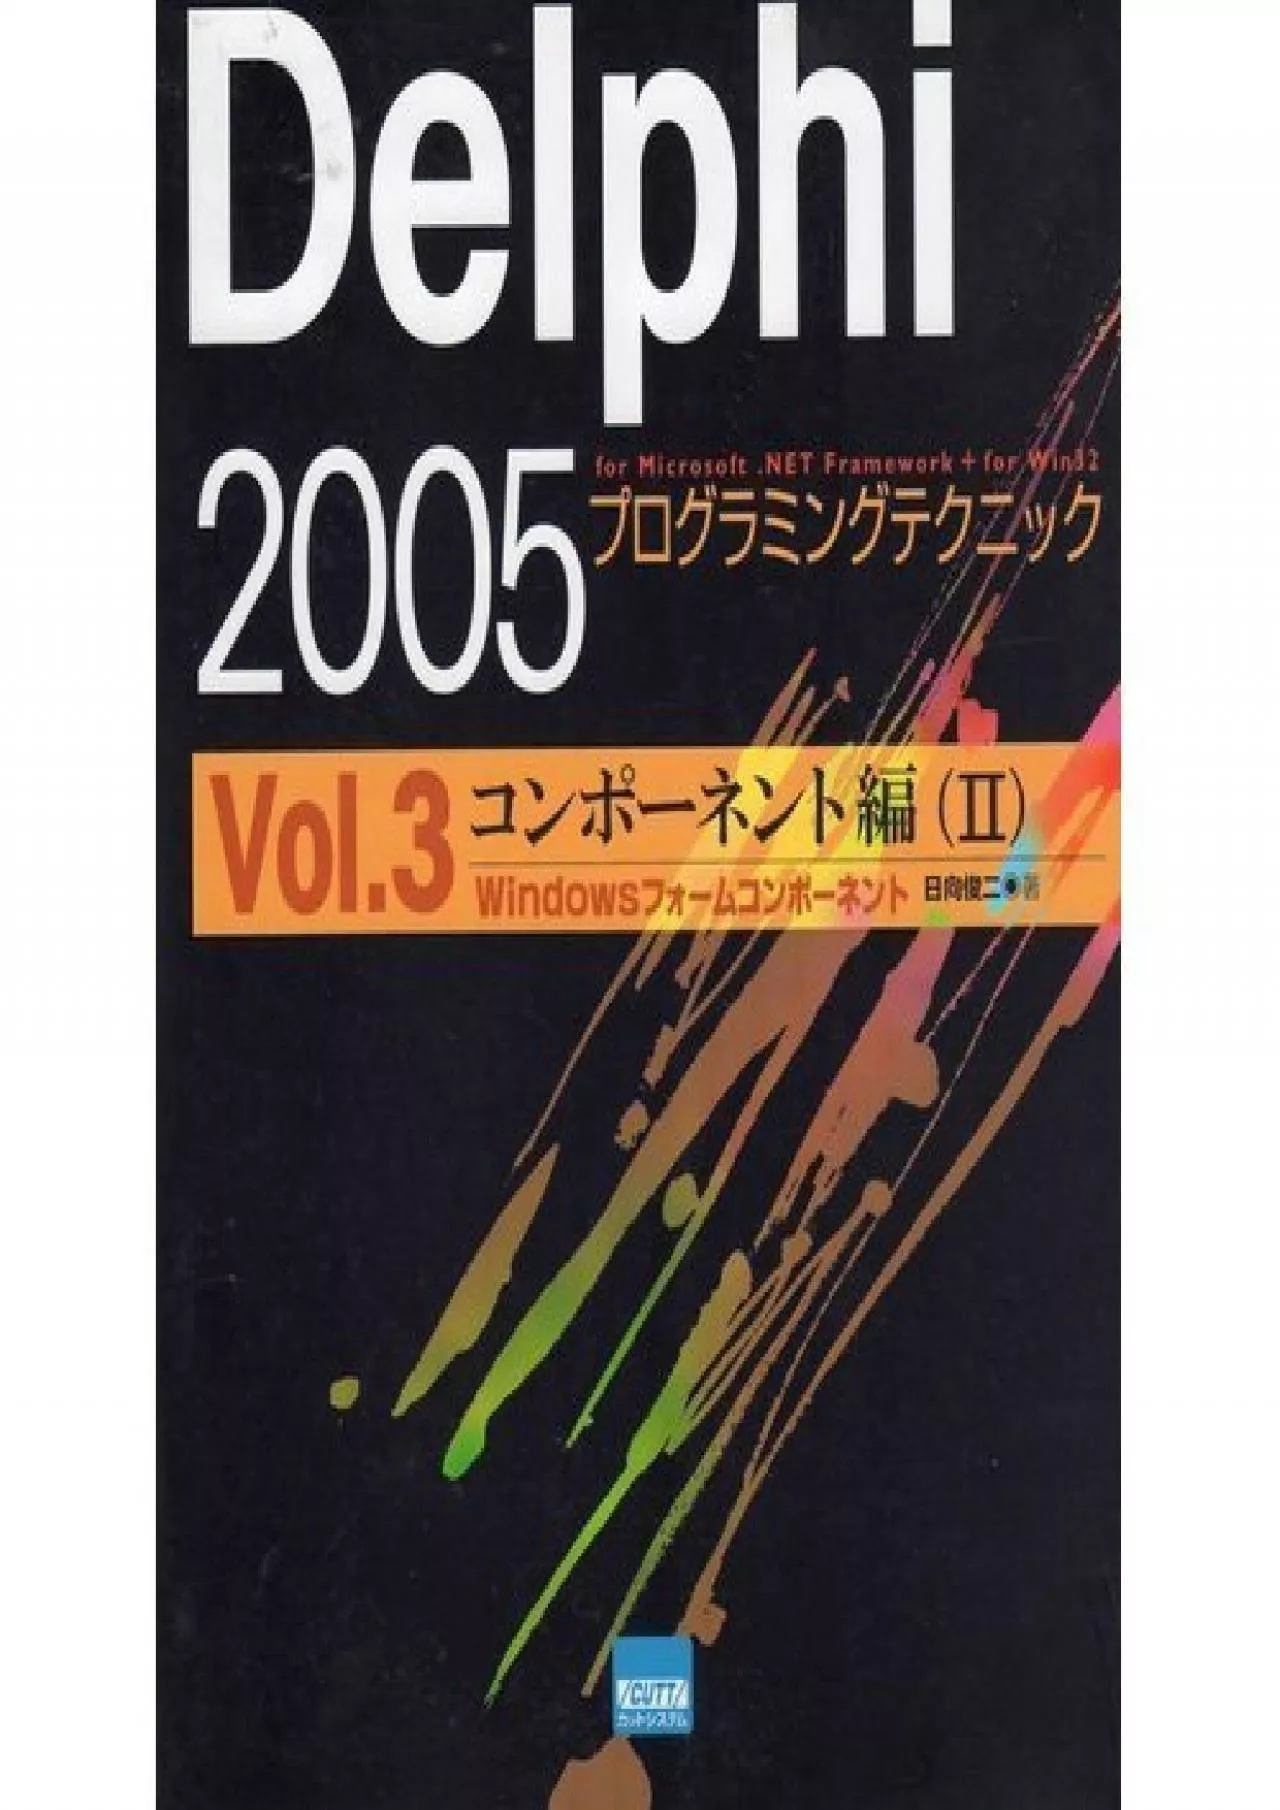 [READING BOOK]-Delphi 2005 Programming Techniques-For Microsoft.NET Framework + for Win32